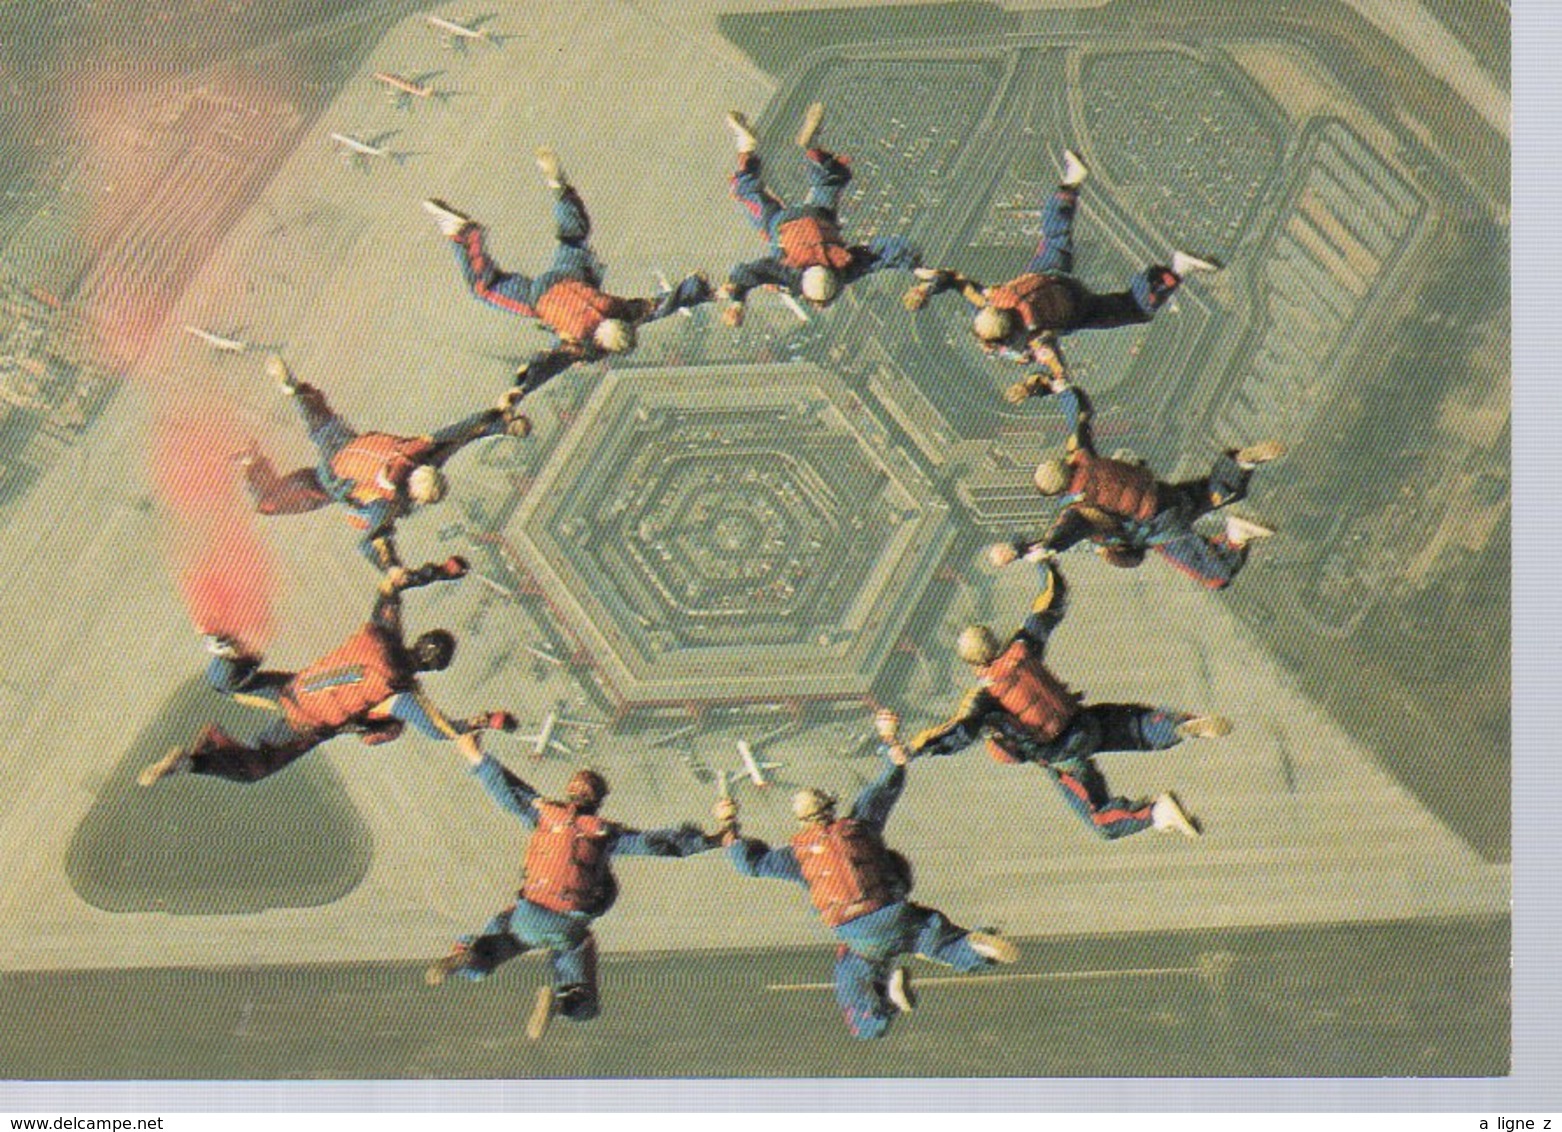 REF 353 - CPSM Parachutisme L'équipe Phénix Berlin Tegel 14 Juillet 1977 - Fallschirmspringen